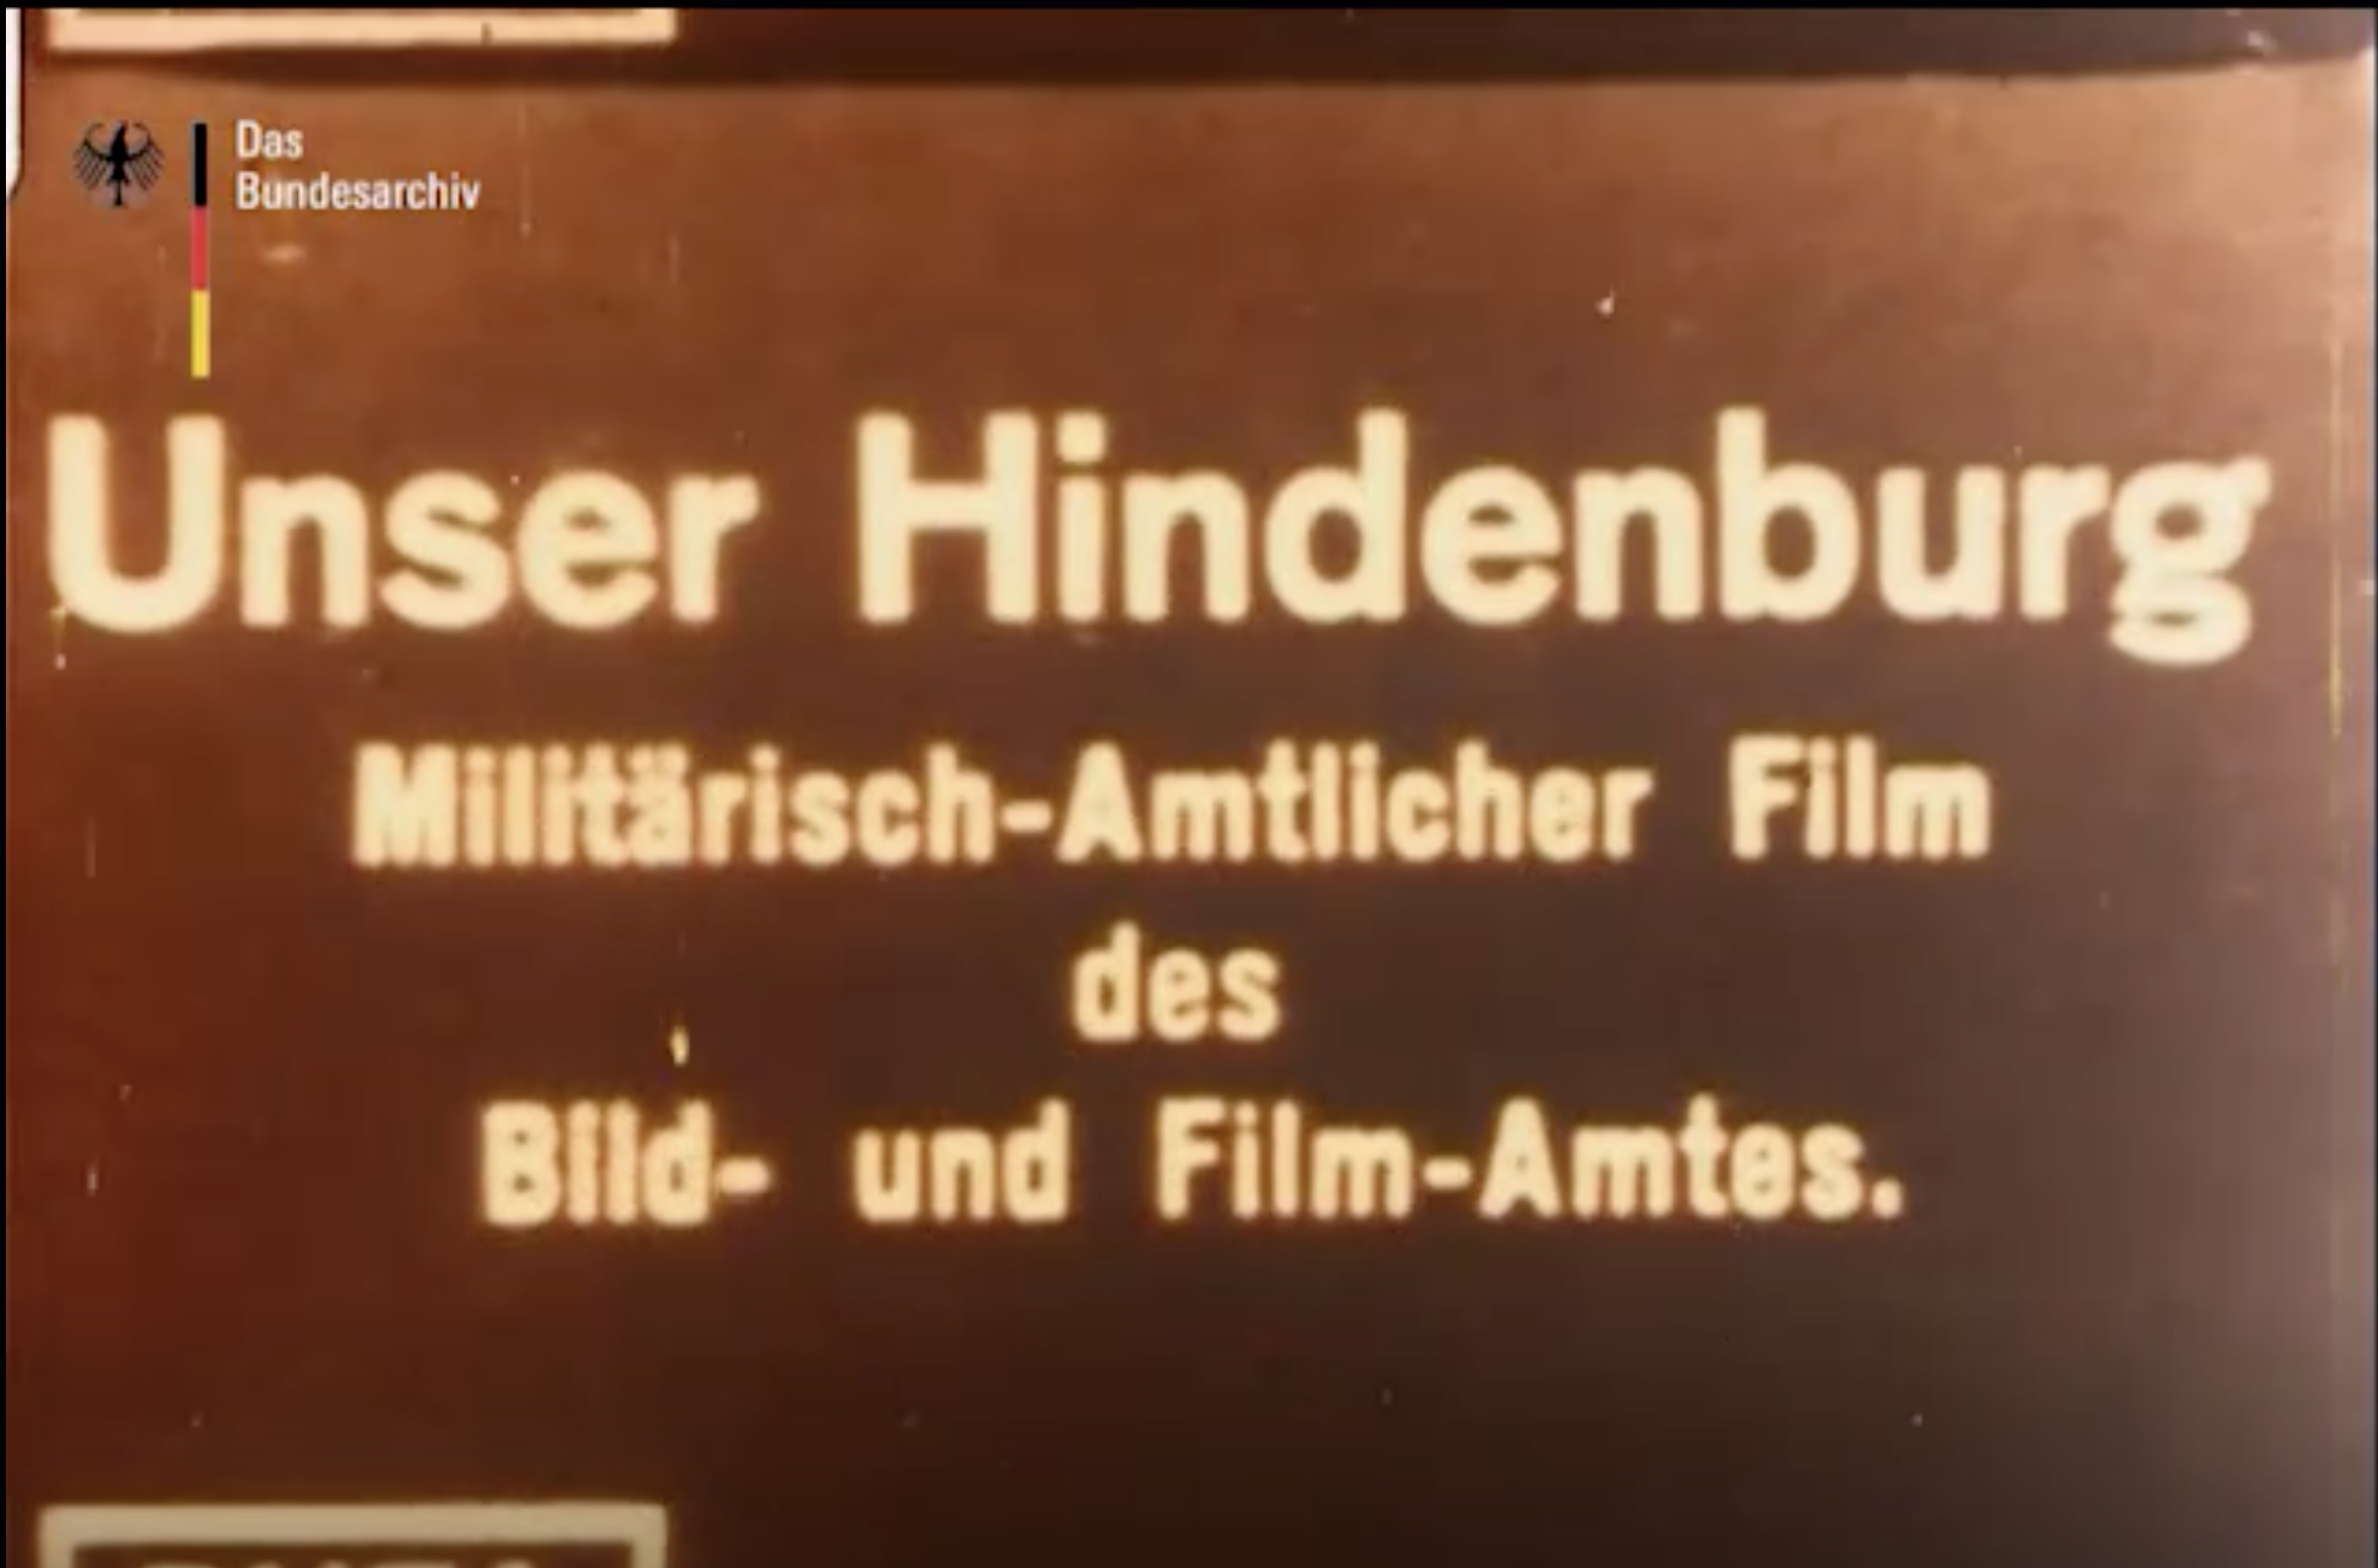 Unser Hindenburg / Our Hindenburg